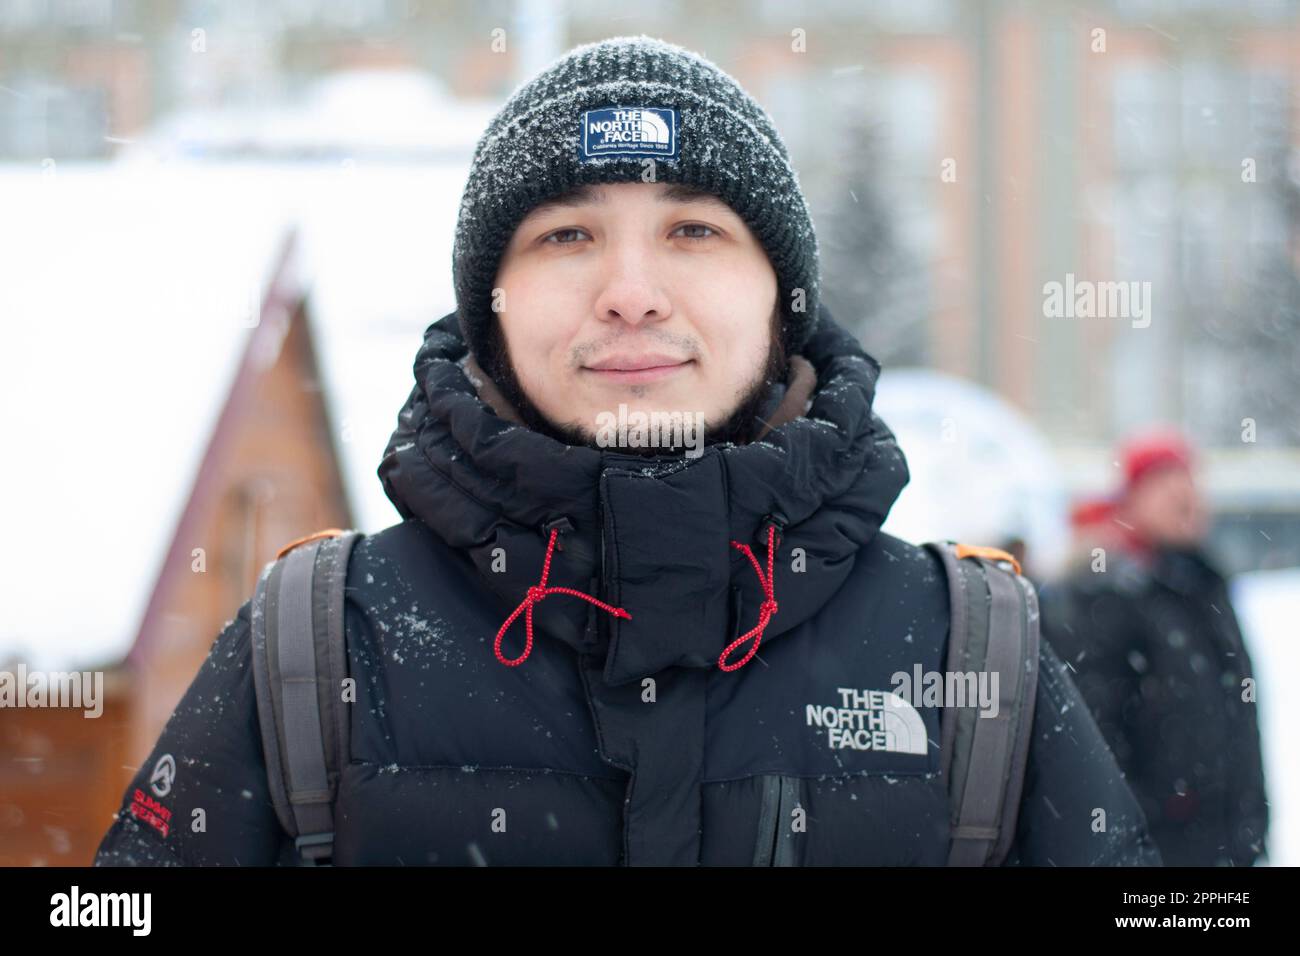 Moscou, Russie - 01 mars 2022 : un homme du dos dans une veste noire et dans une brochette près de la face nord, en hiver. Le logo de l'entreprise de vêtements 'The North face'. Banque D'Images